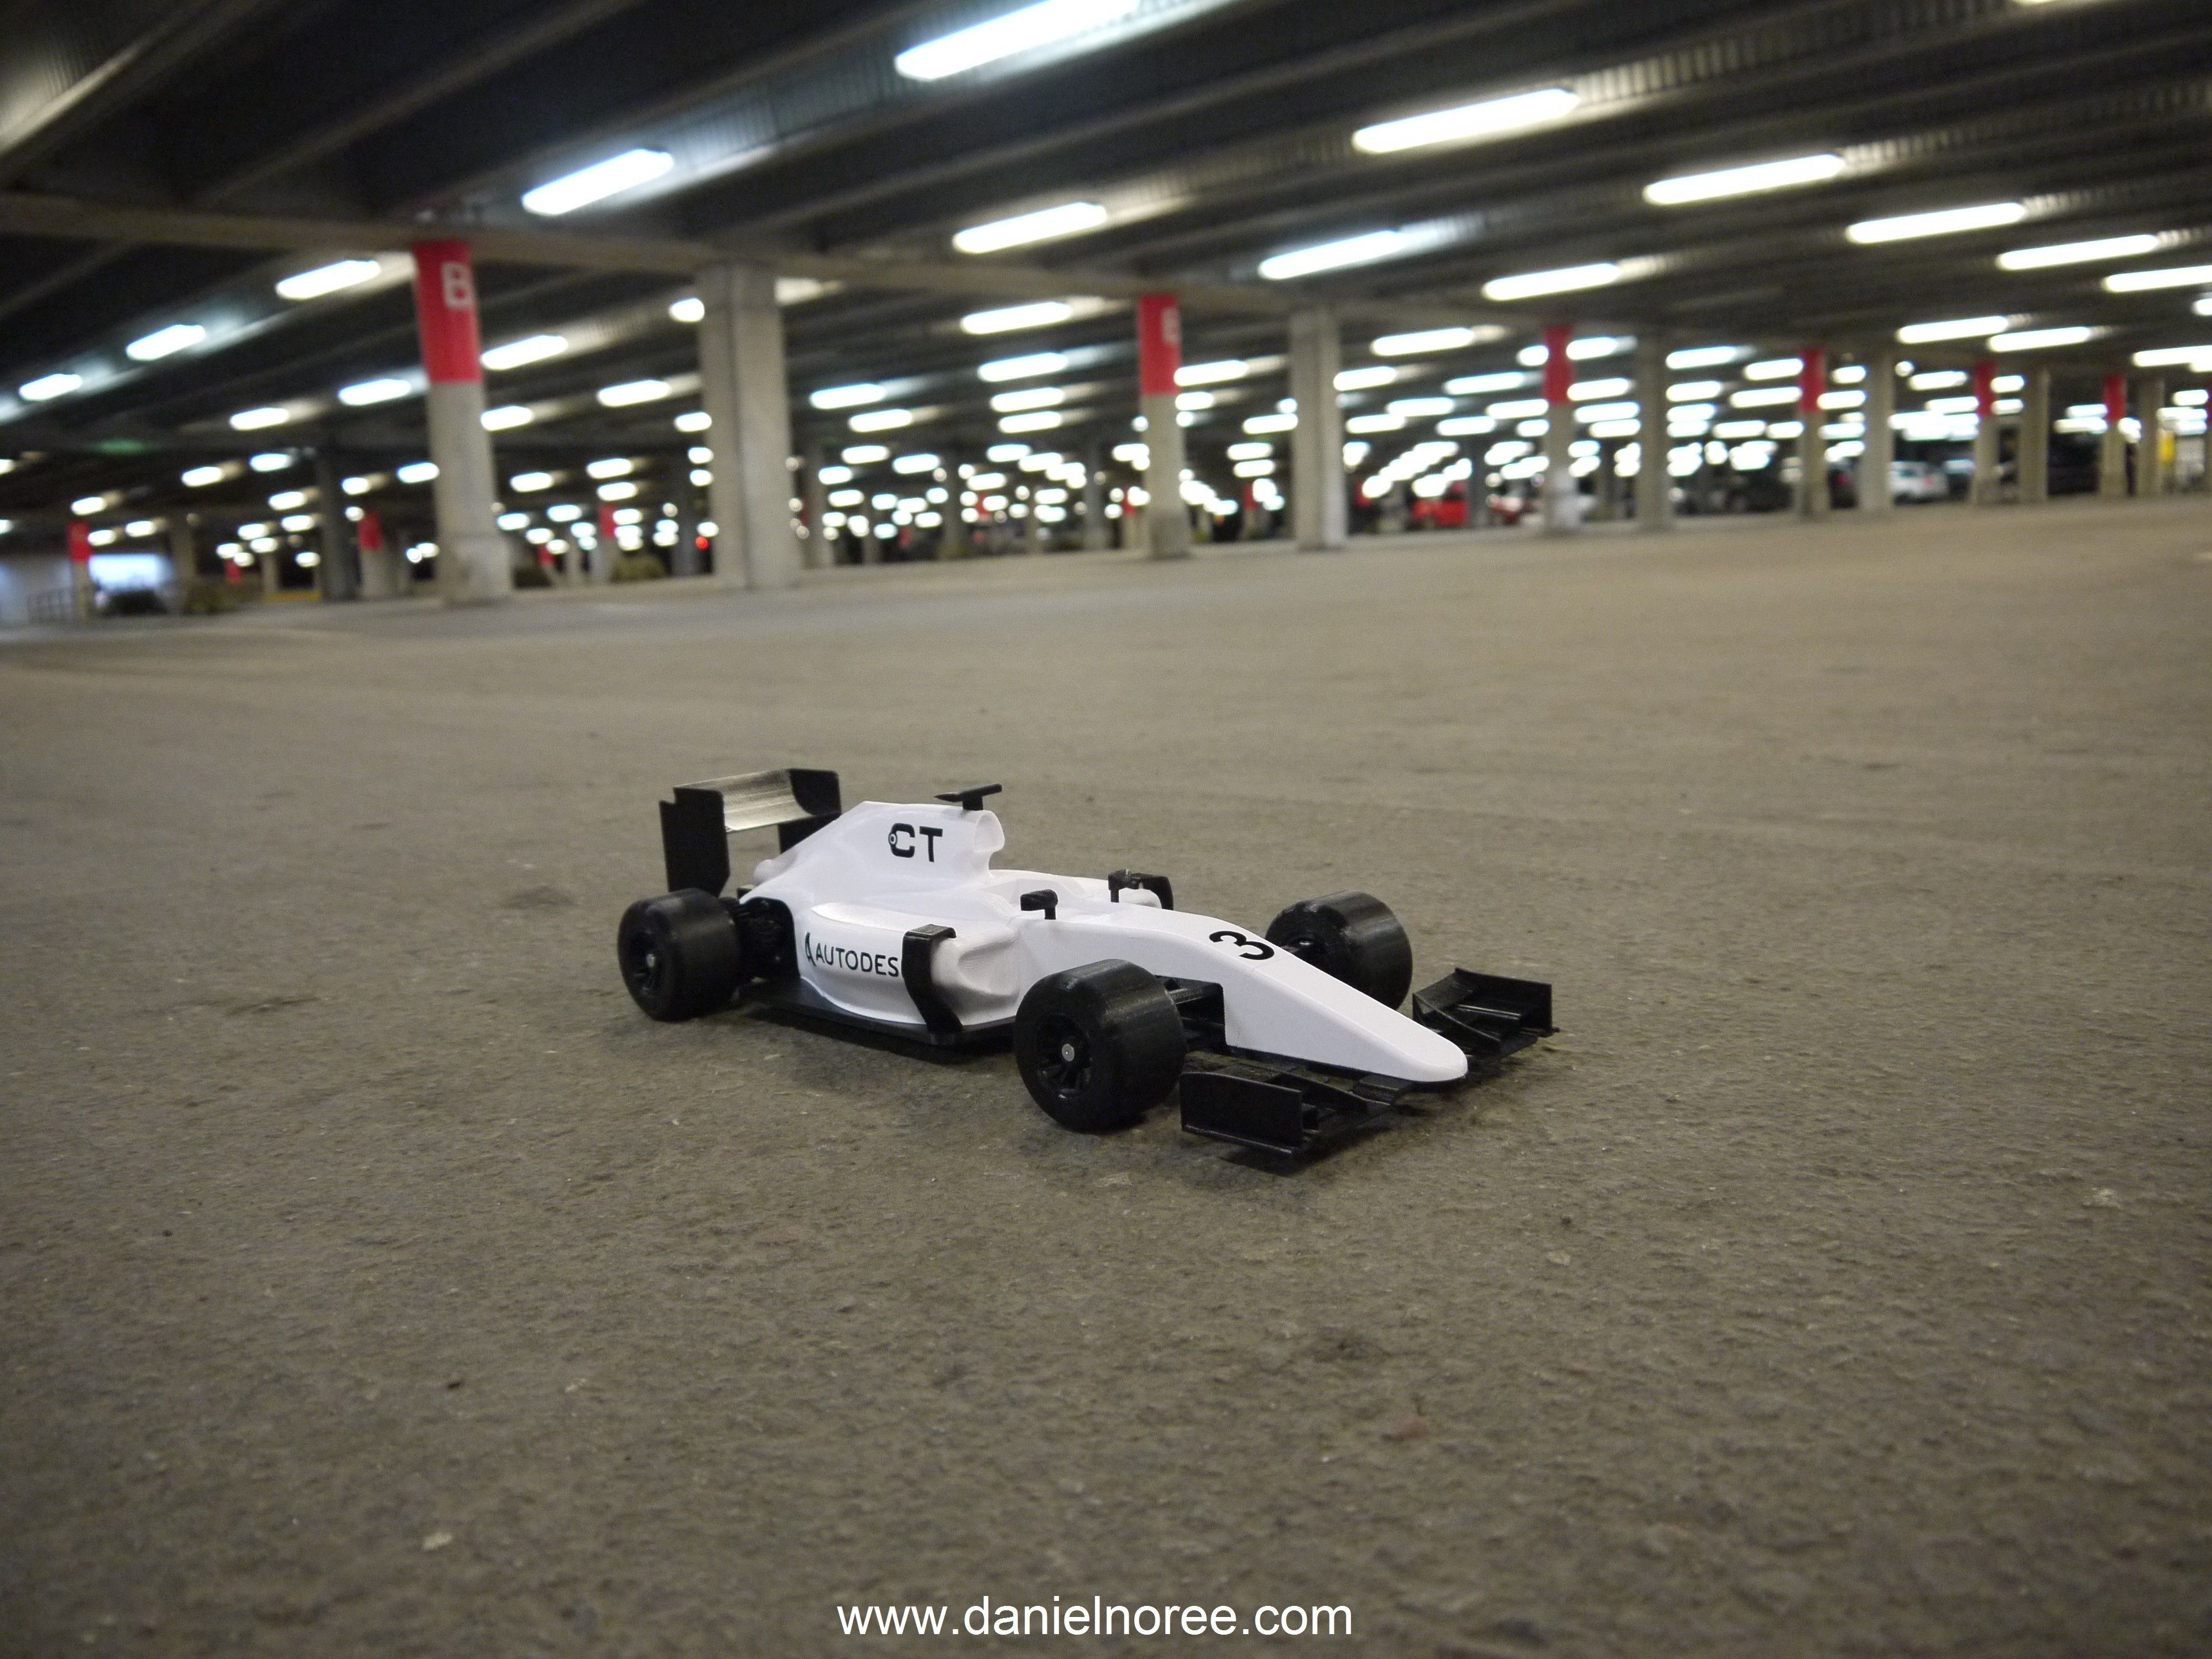 P1040437.JPG Télécharger fichier STL gratuit OpenR / C 1:10 Formule 1 voiture • Design pour impression 3D, DanielNoree